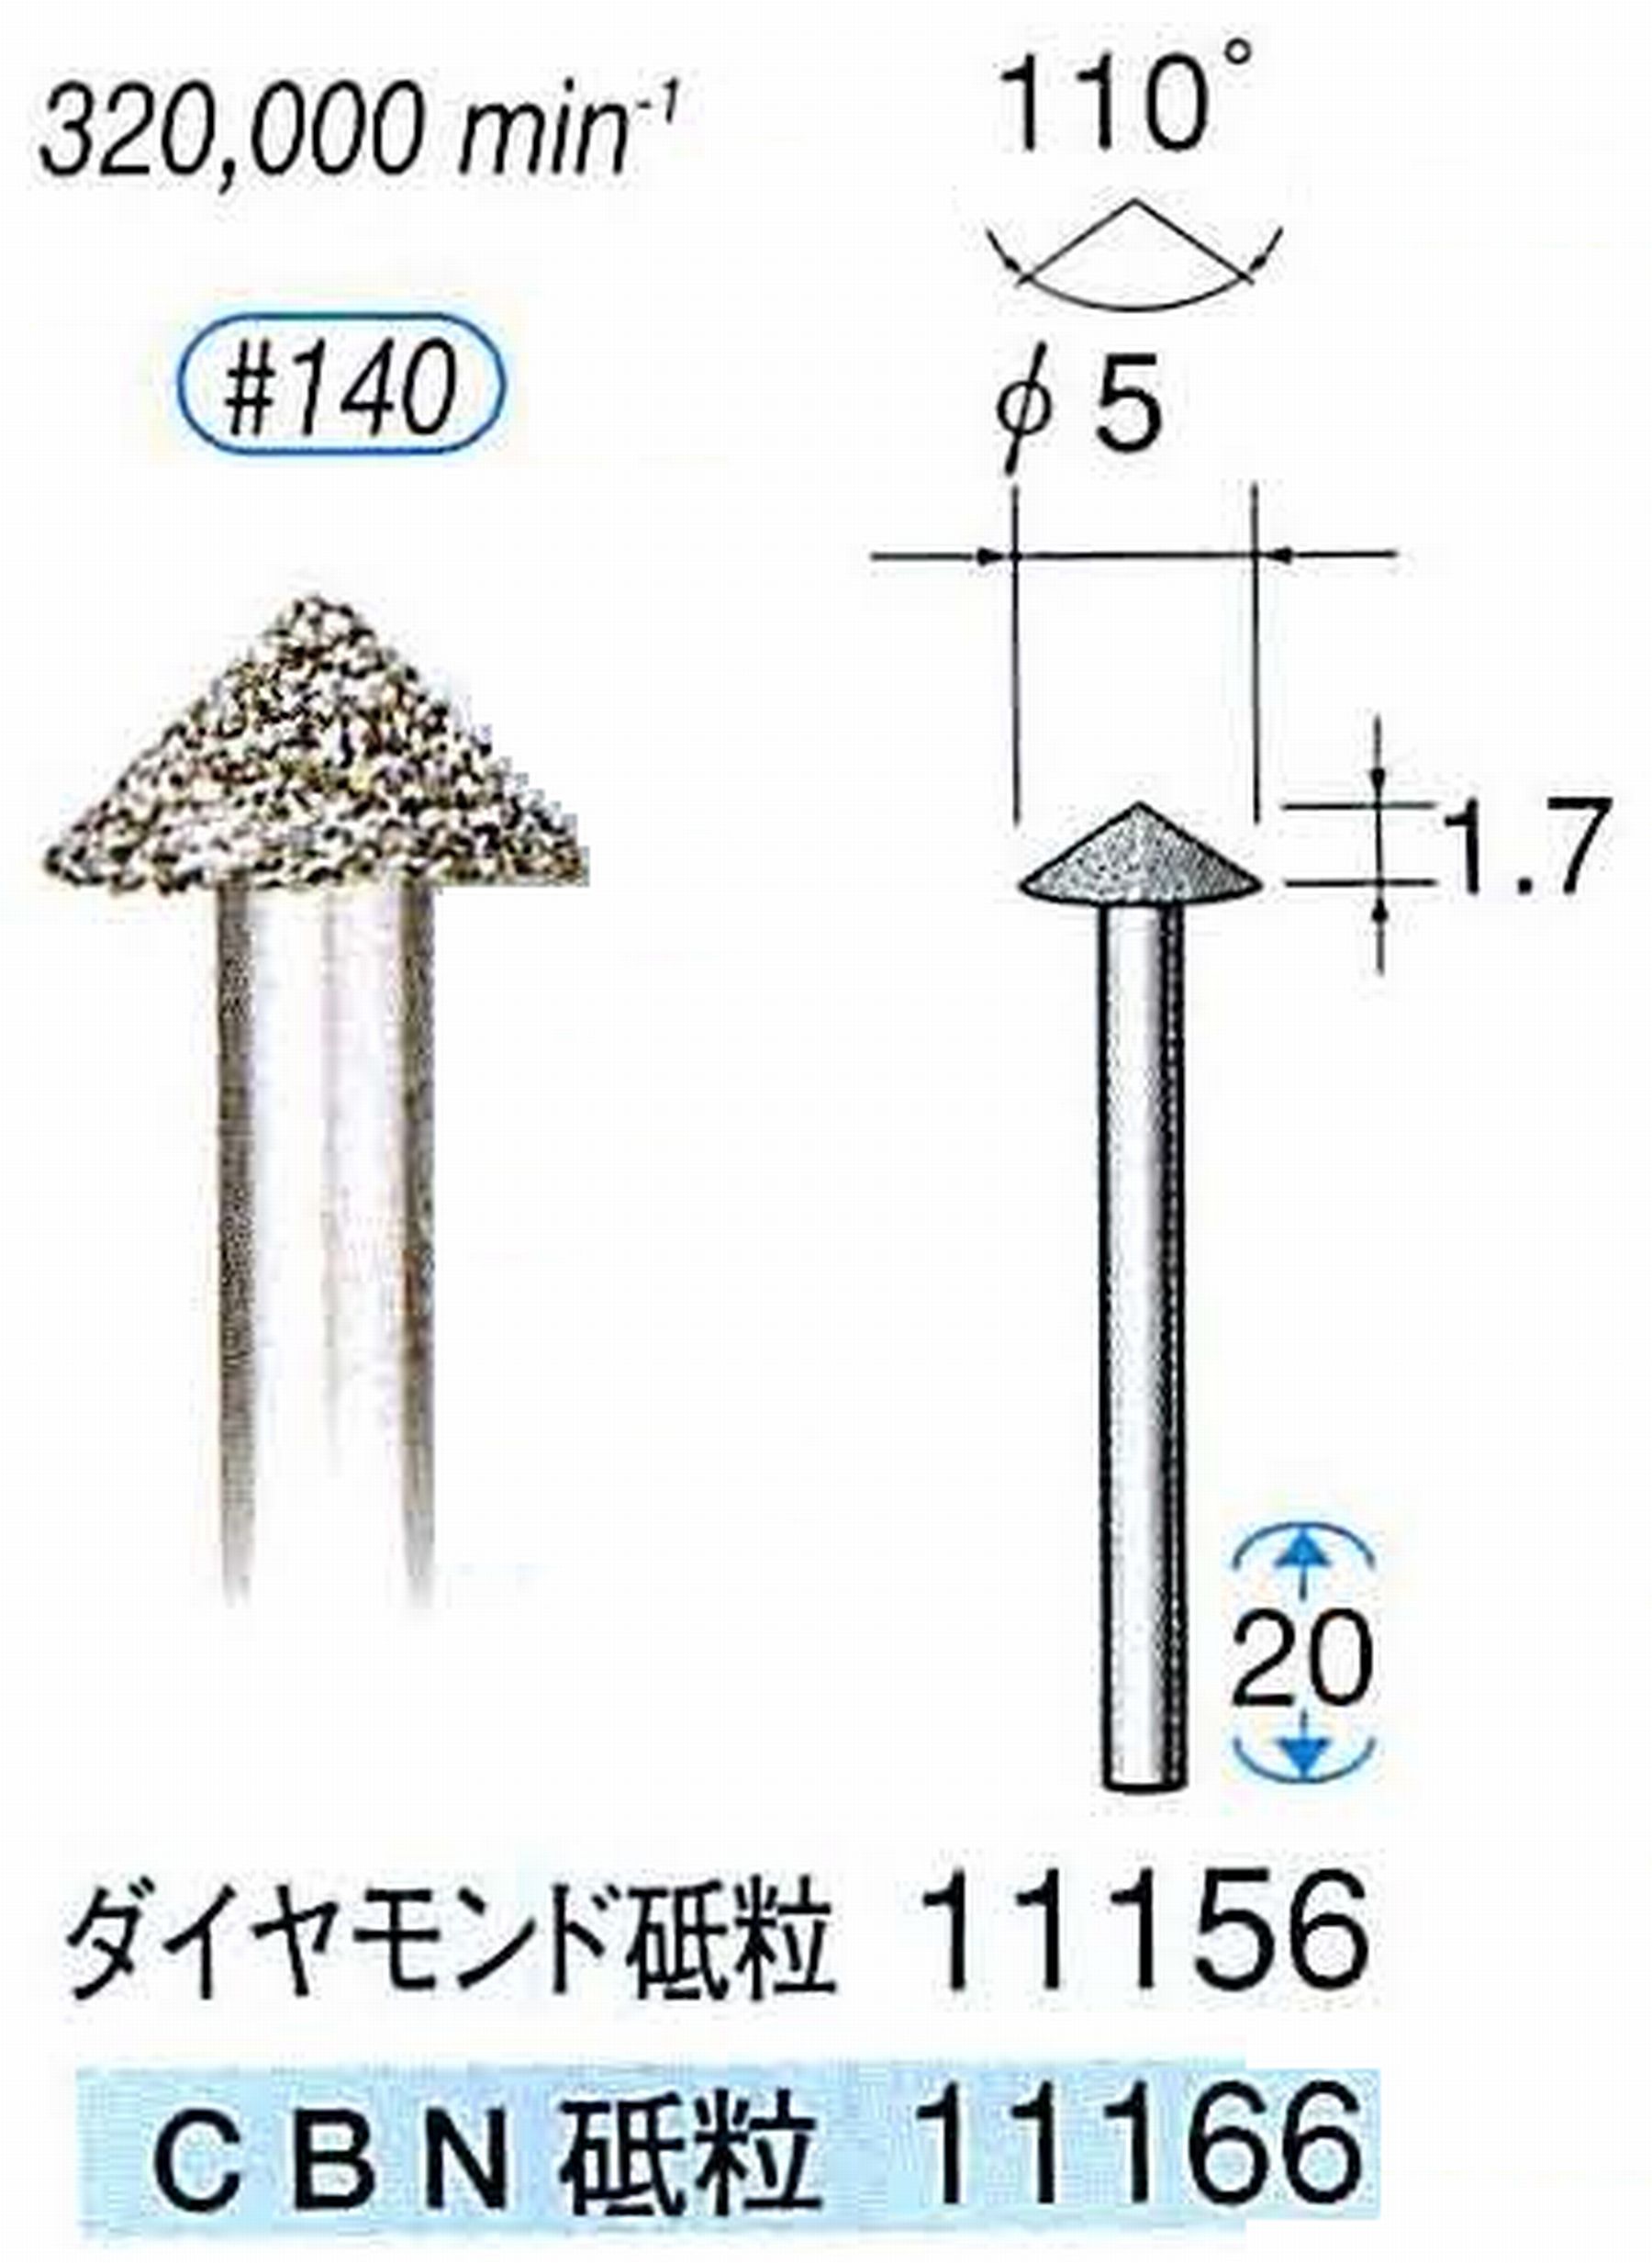 ナカニシ/NAKANISHI 電着ダイヤモンドバー(ミニチュアタイプ)ダイヤモンド砥粒 軸径(シャンク)φ1.6mm 11156